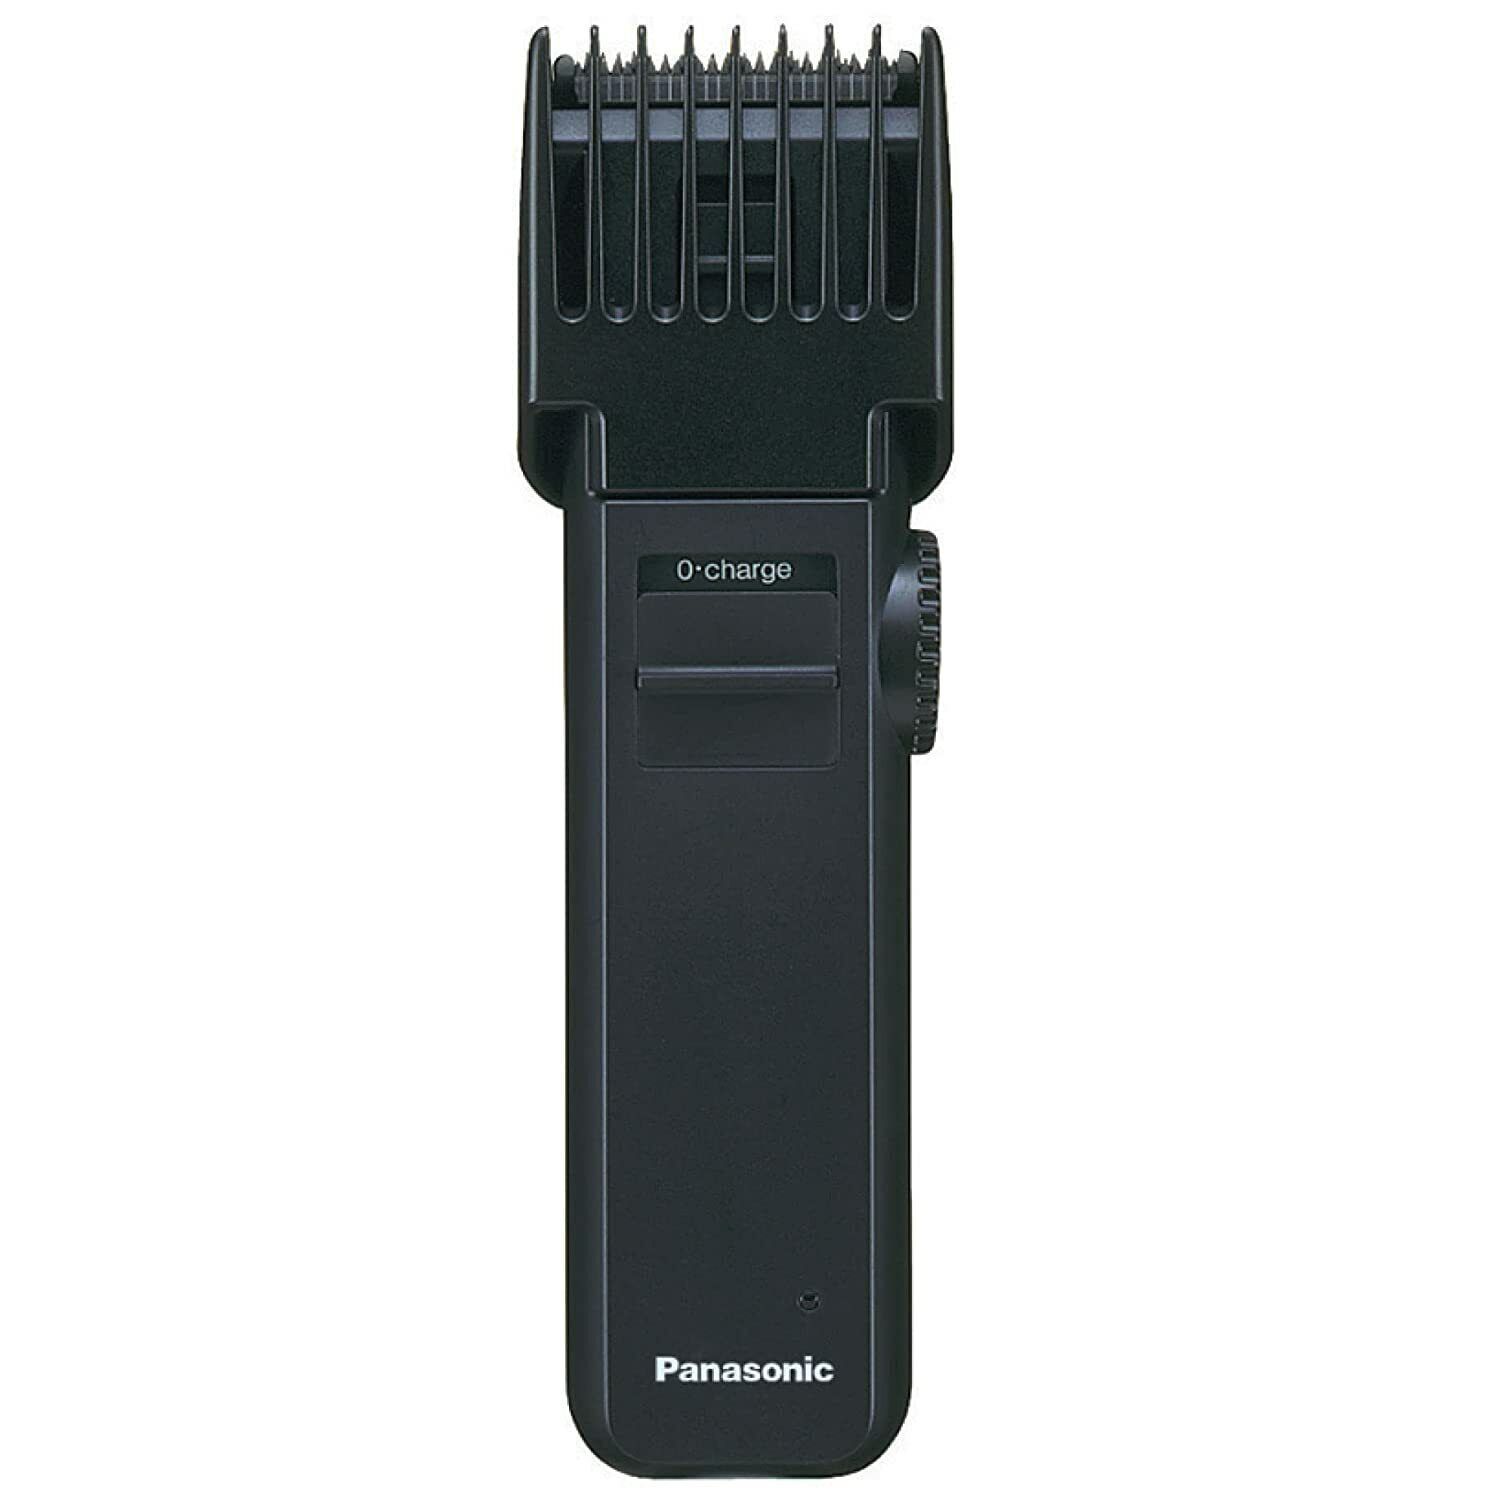 Триммер Panasonic ER 2031 K7511 черный триммер panasonic er gb80 s520